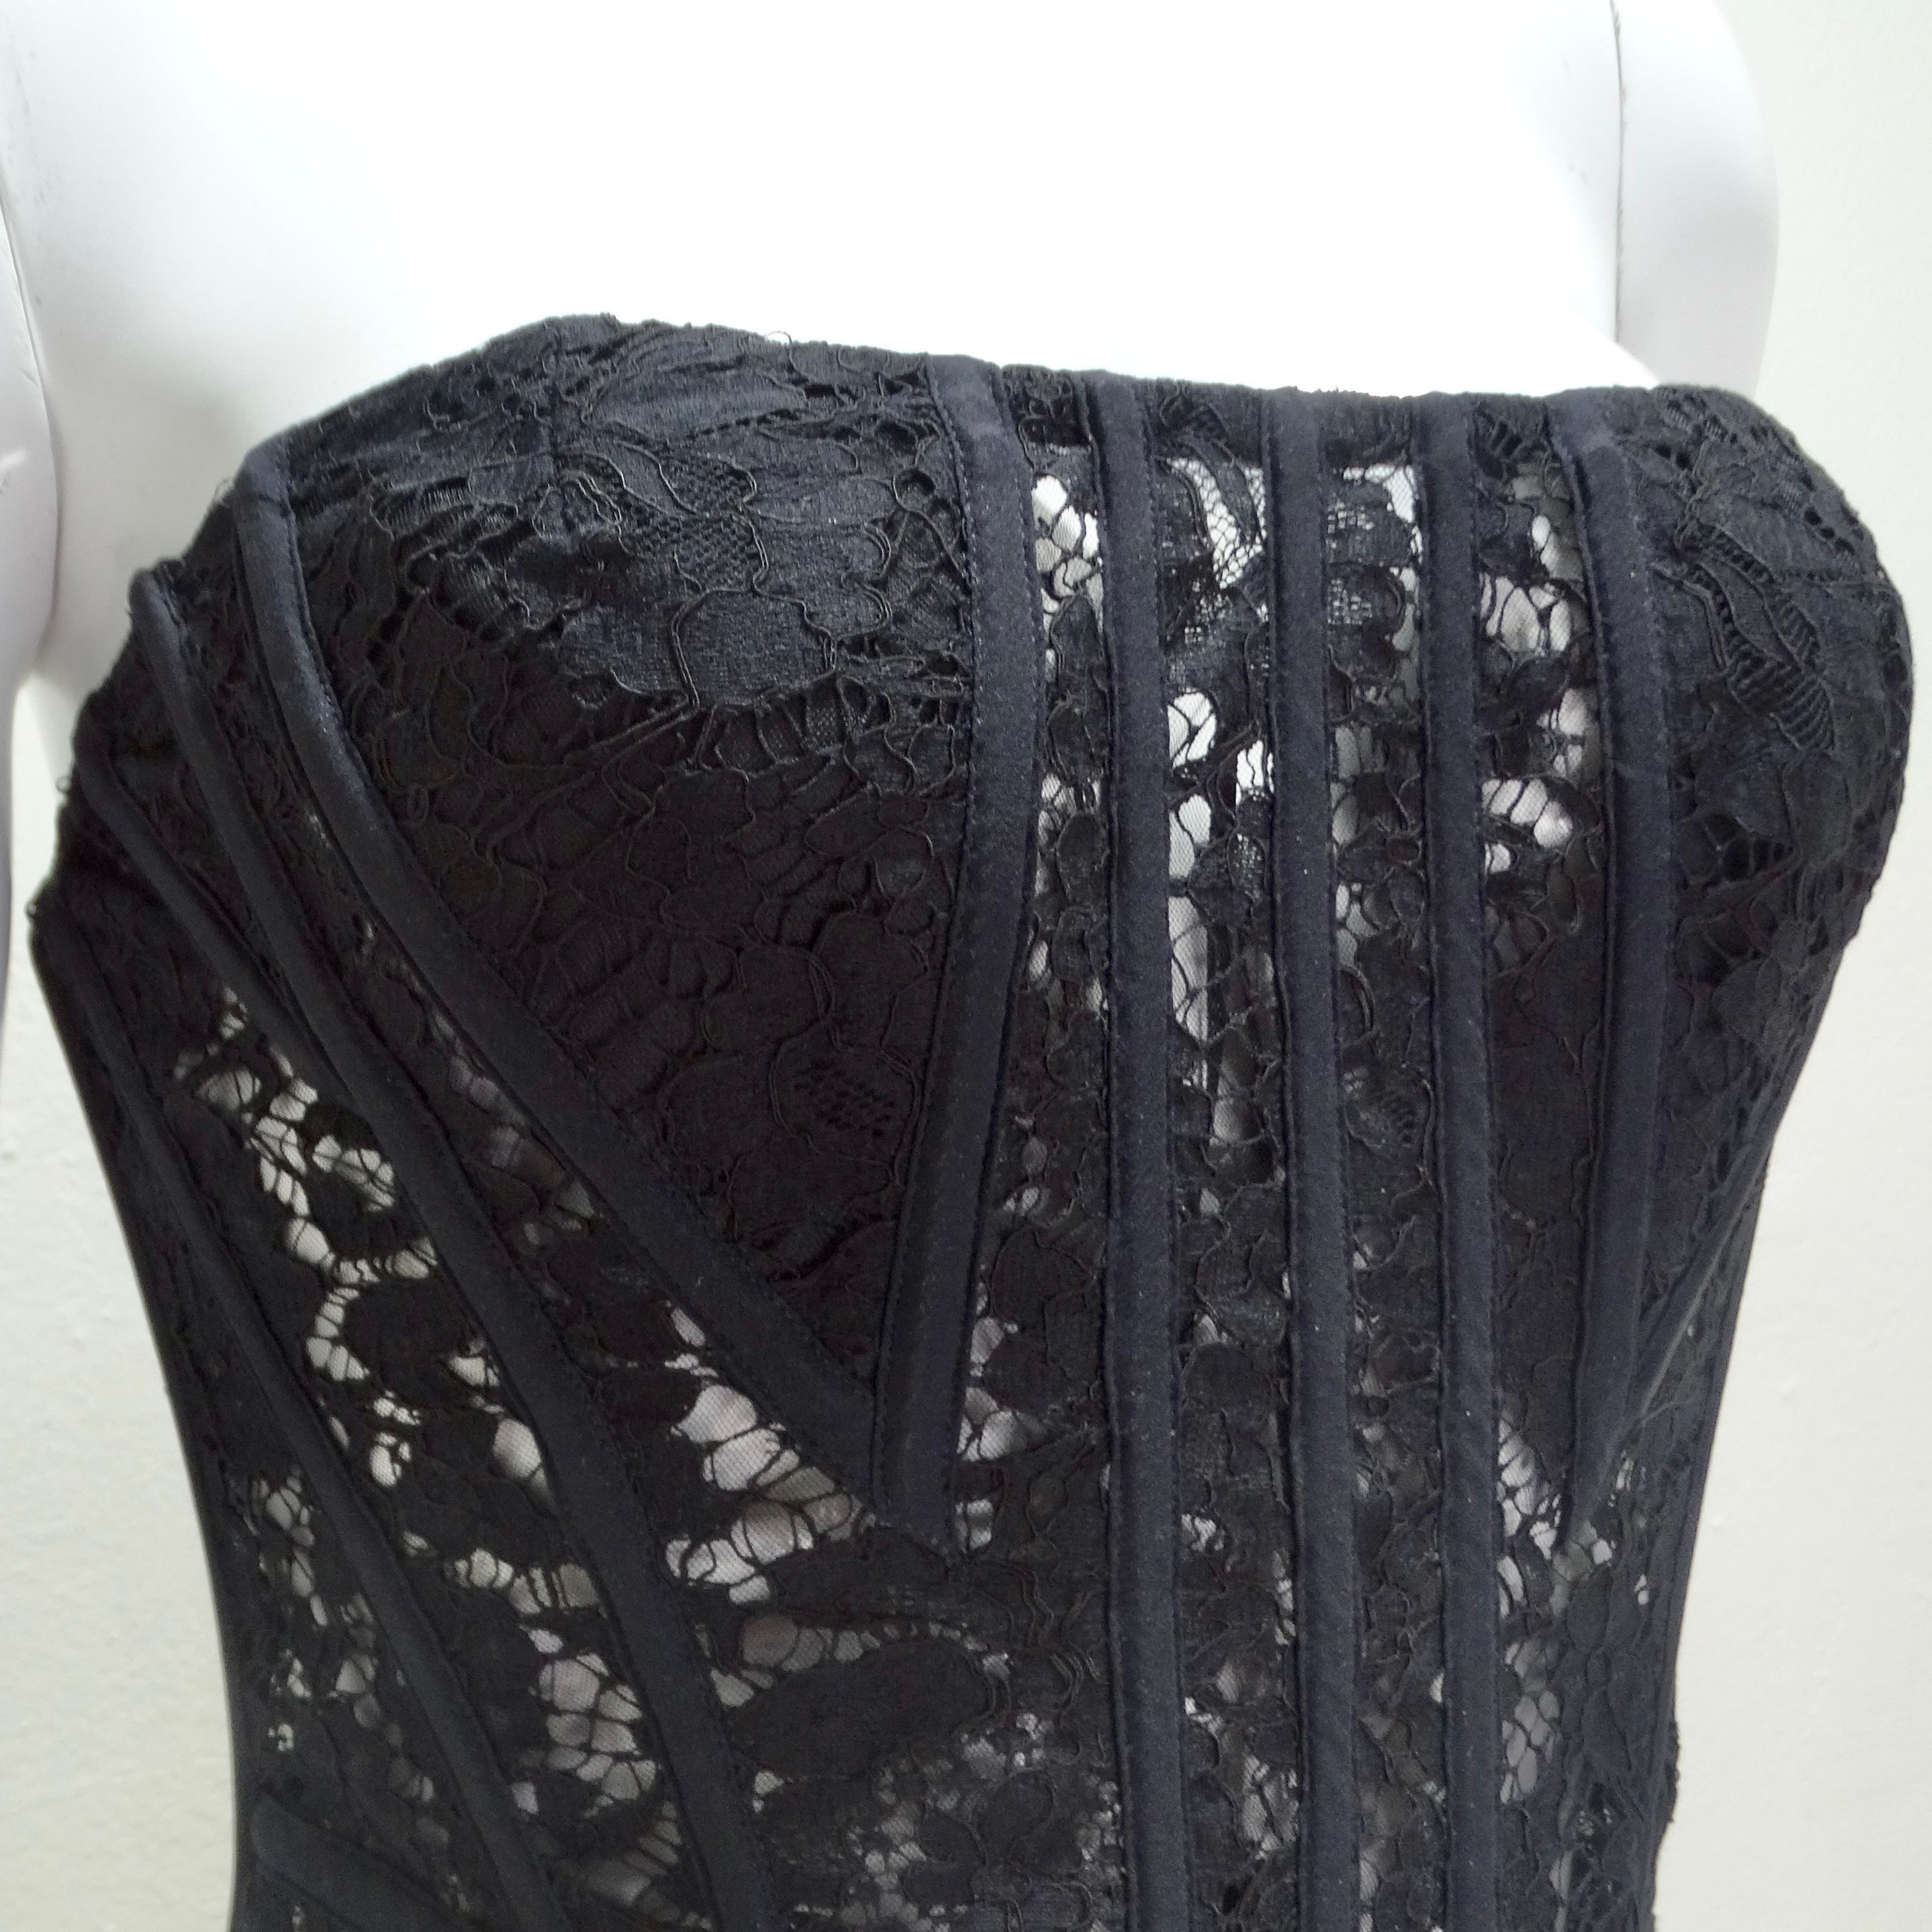 Dolce & Gabbana présente le top corset à panneaux de dentelle, une interprétation moderne et élégante du corset structuré classique. Réalisé dans un noir intemporel, ce corset présente un mélange de dentelle noire transparente et de panneaux de